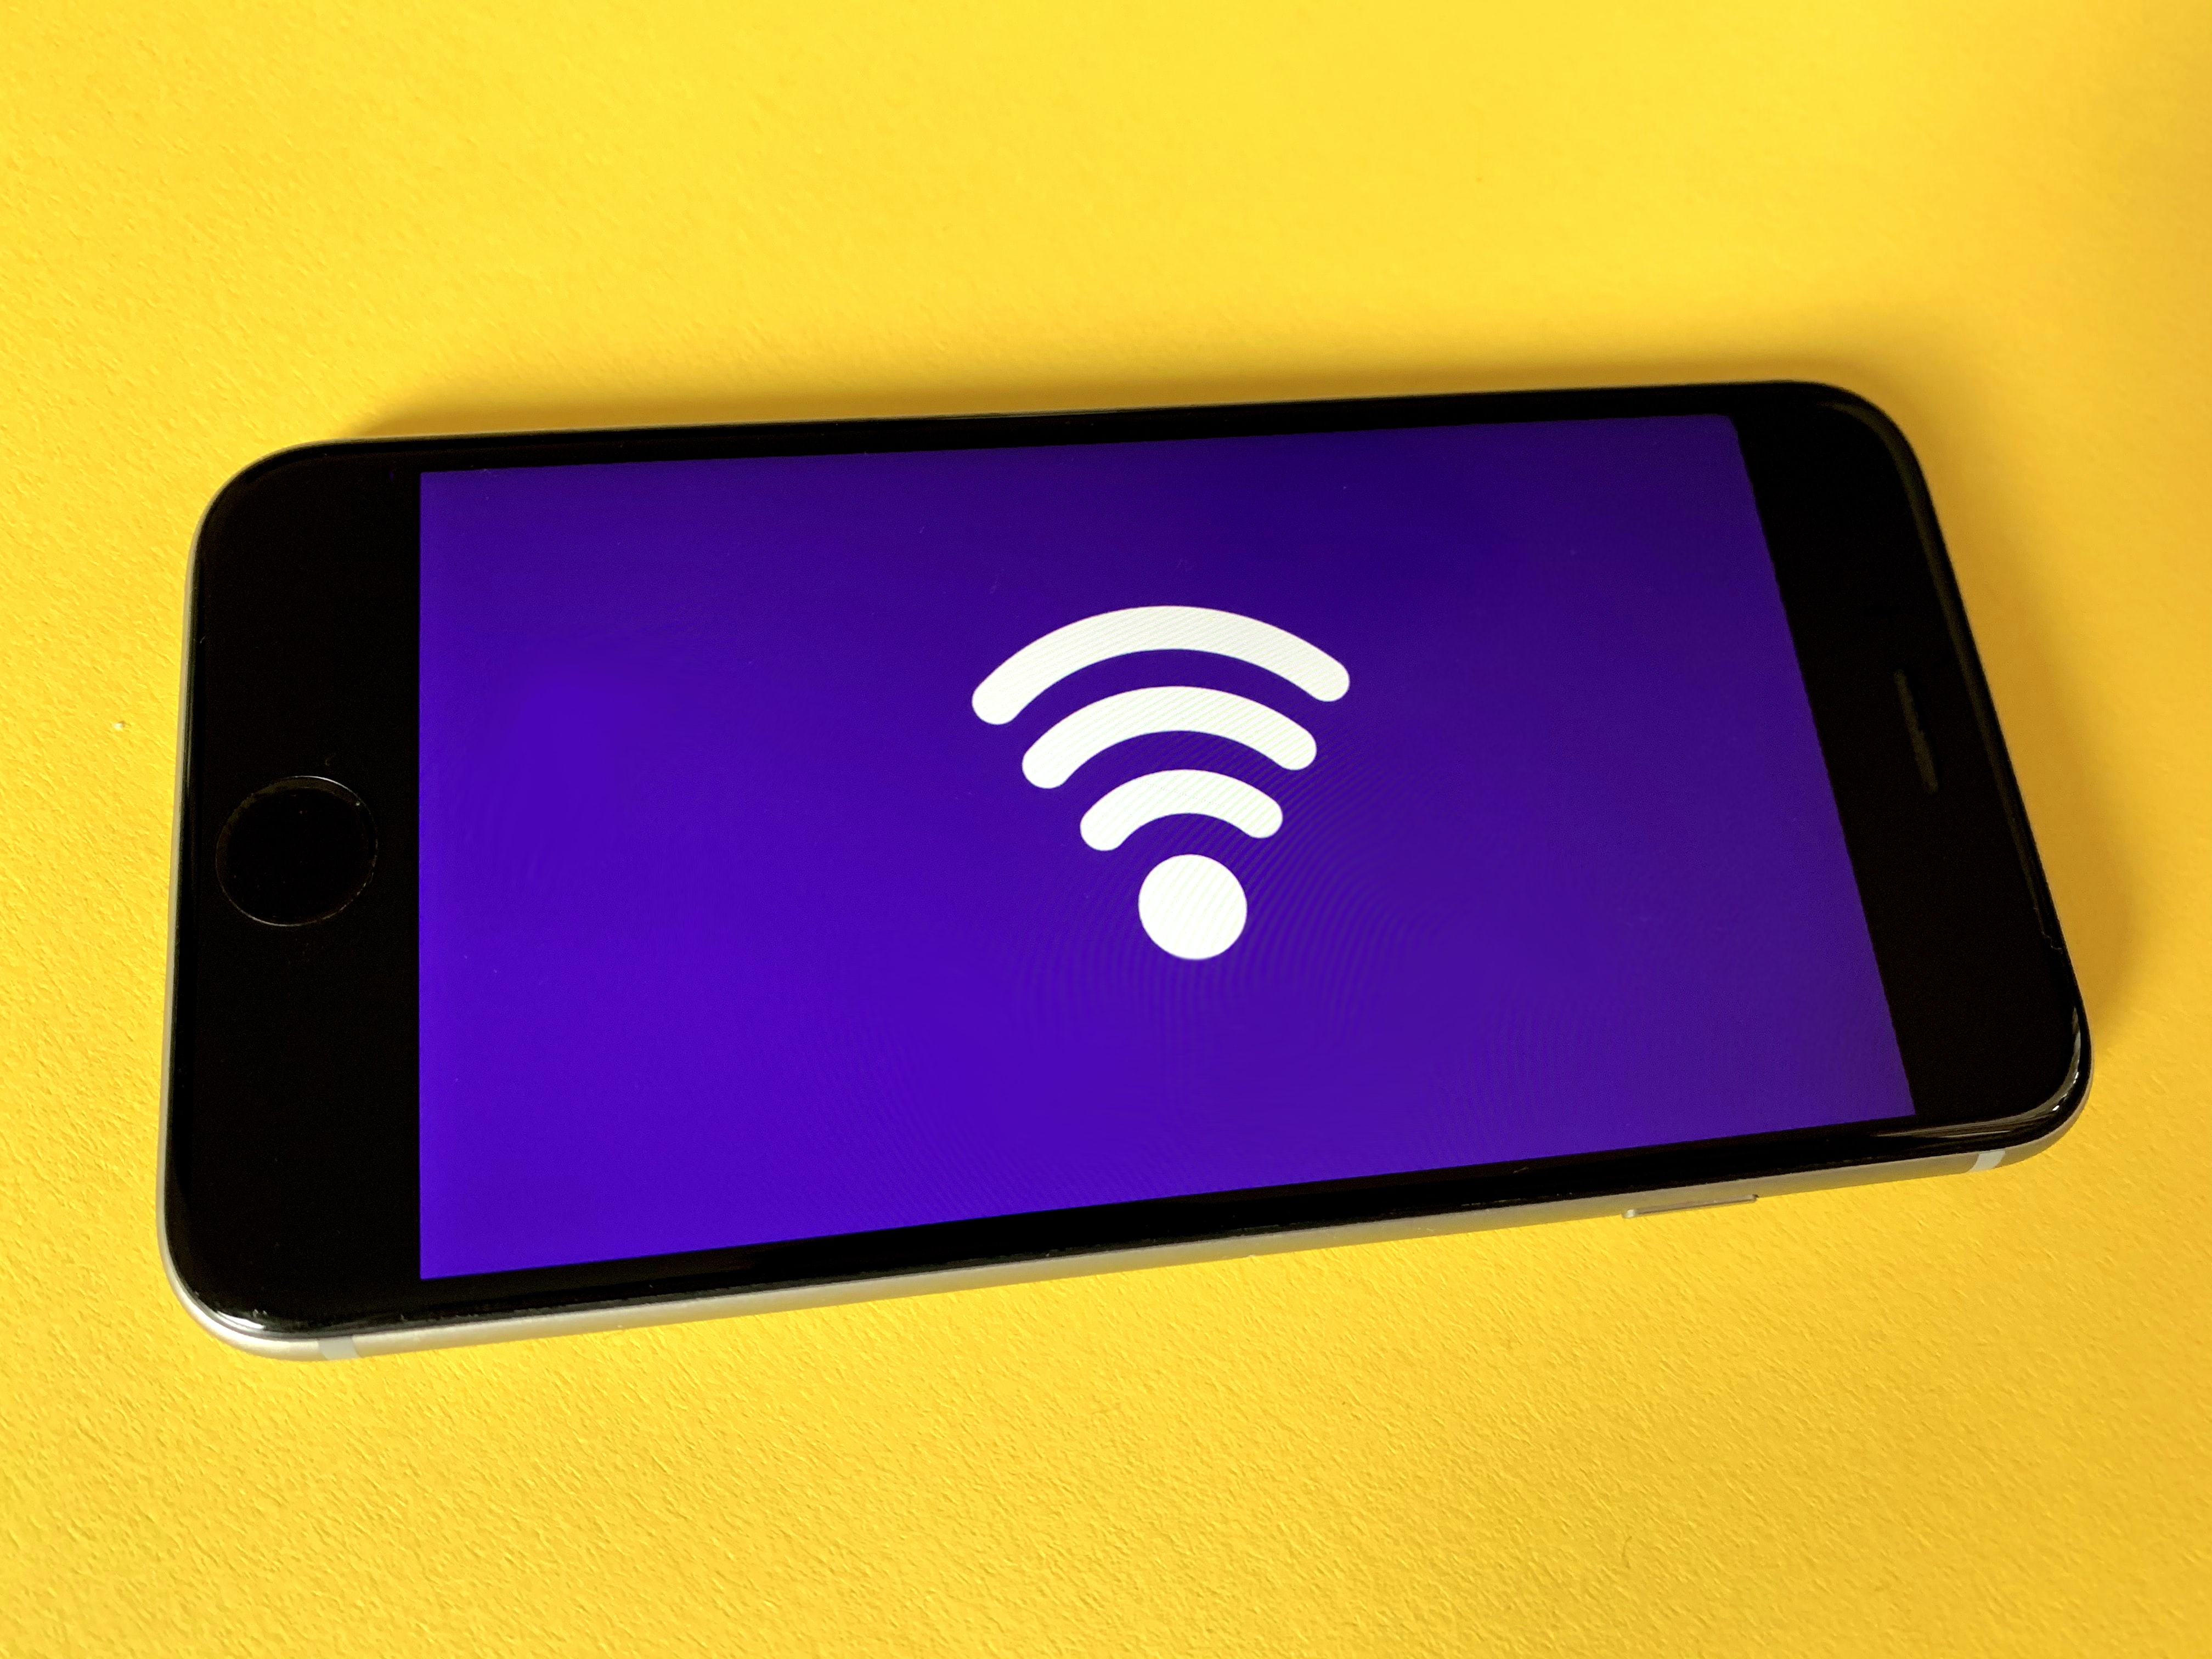 oferece apps pagos de graça e Wi-Fi em SP para comemorar